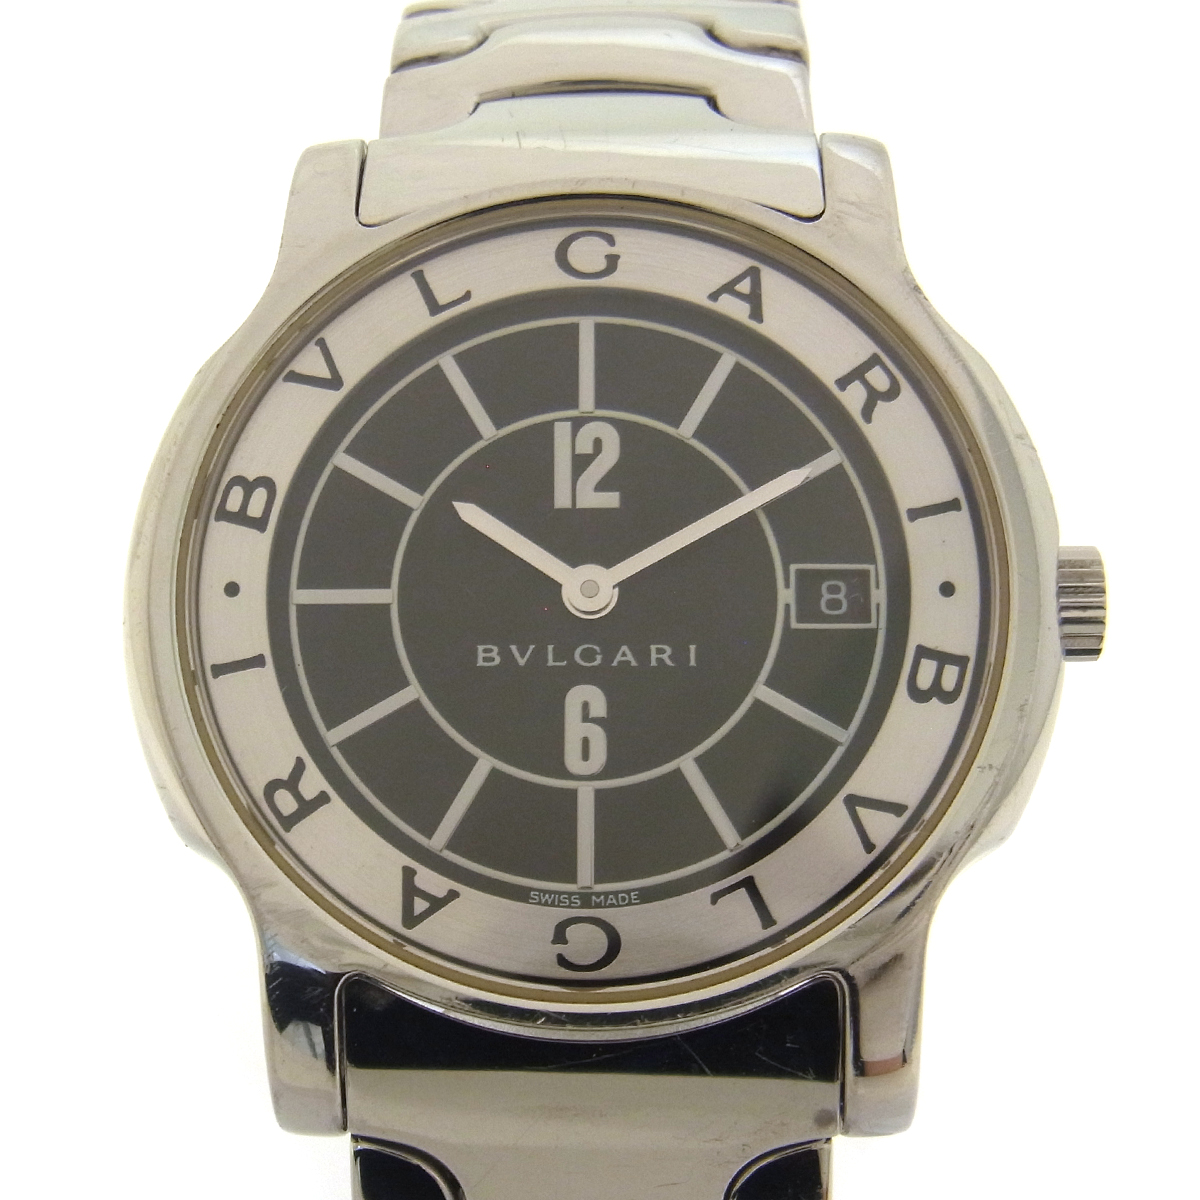 ブルガリ(BVLGARI) ソロテンポ ST35S メンズ 黒文字盤 腕時計